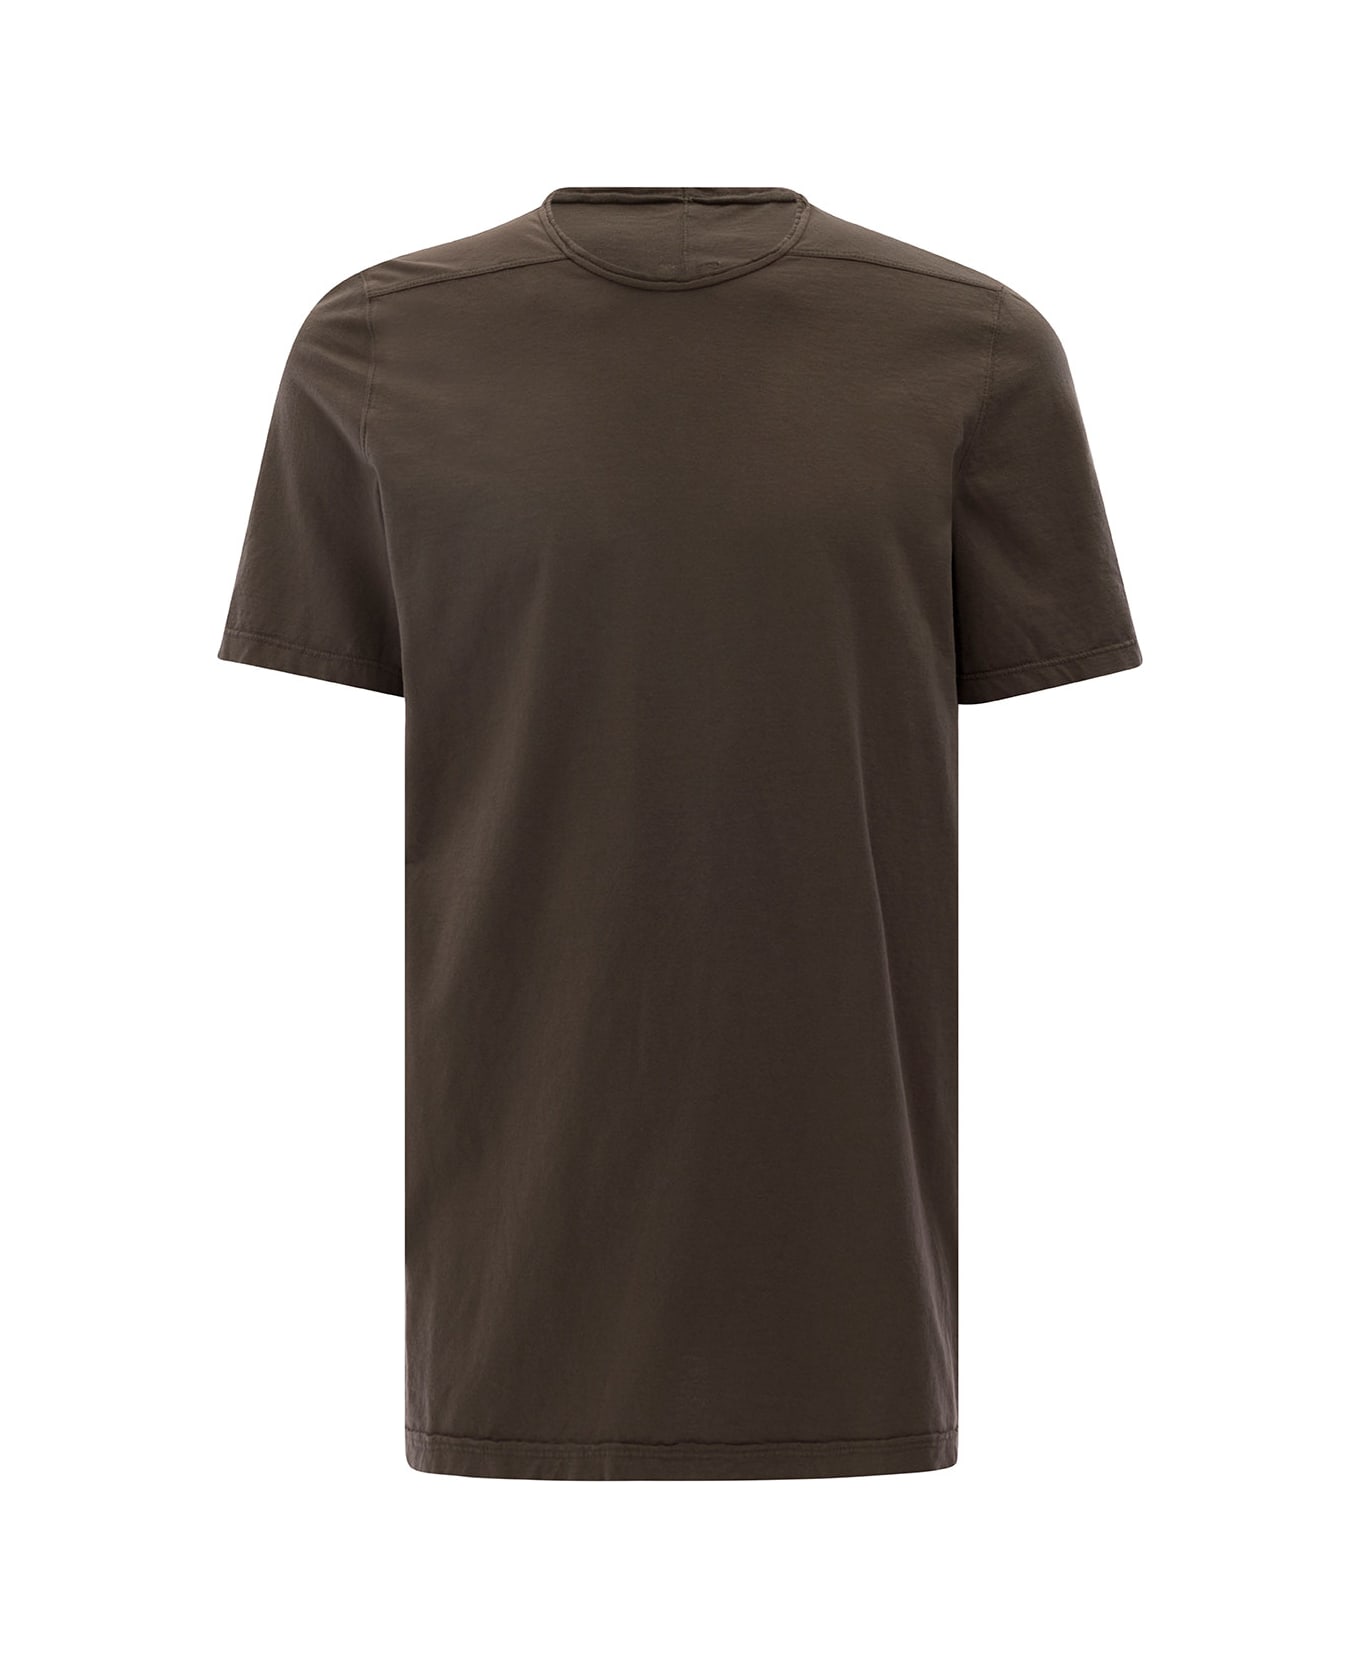 DRKSHDW Brown Round Neck T-shirt In Cotton Man - Brown